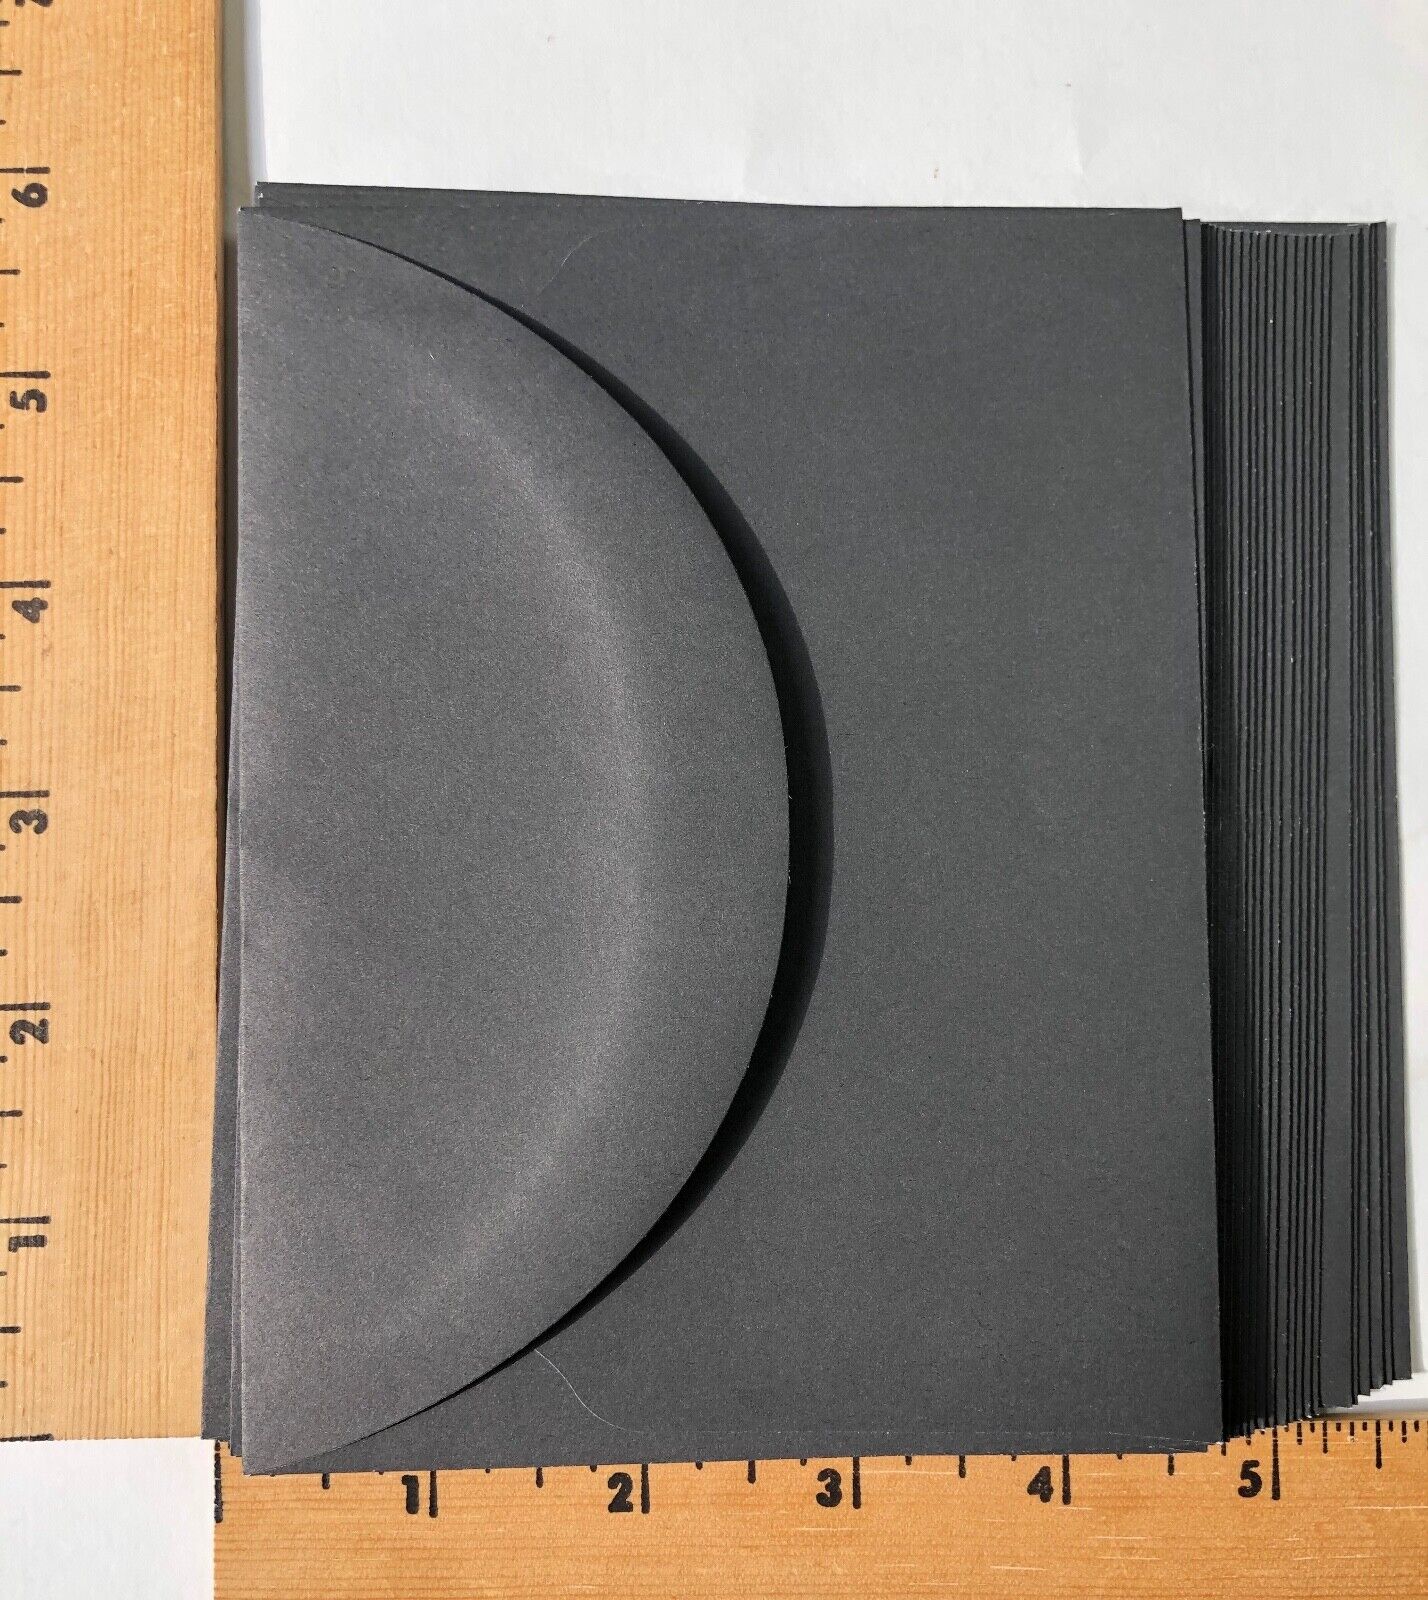 25 - 4 3 8” x 5 Black Flap 4” Max 57% OFF A2 New Semi-Circle Envelopes Elegant